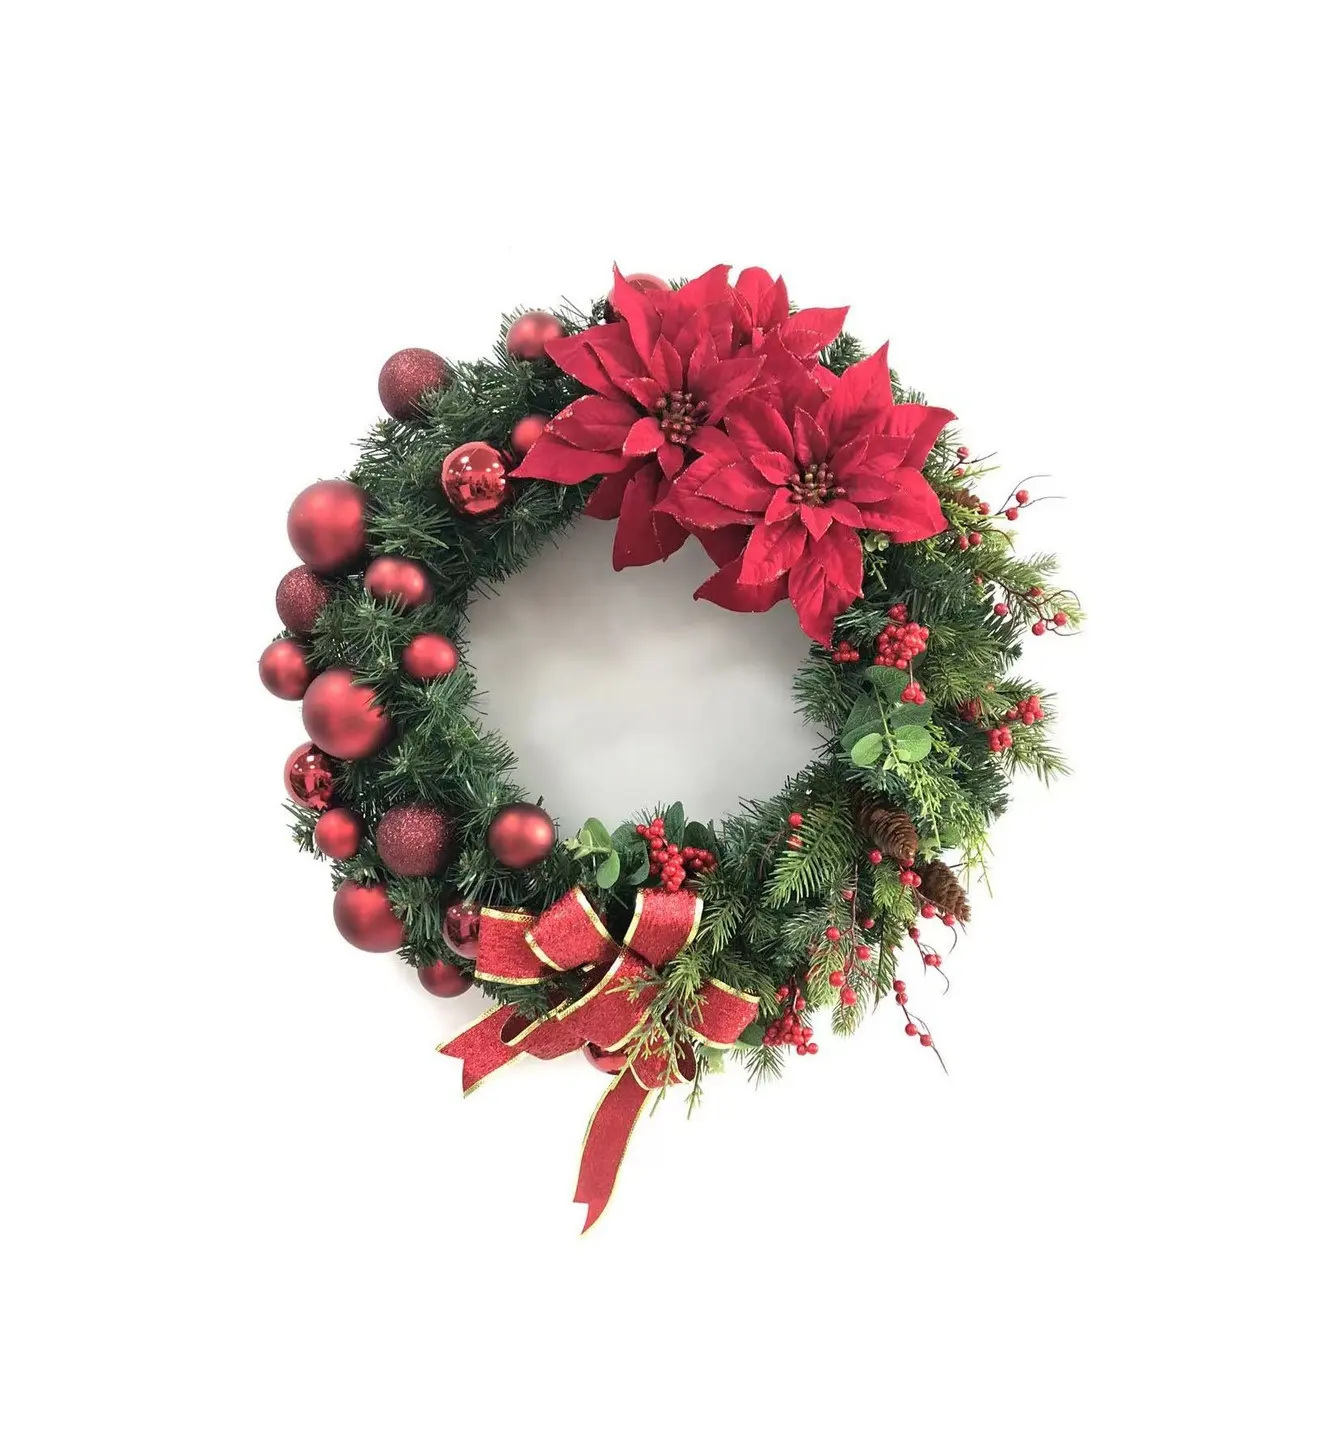 60cm Weihnachts kranz Dekorationen Home Weihnachts girlanden & Kränze mit roter Simulation Blumen Bögen und Beeren